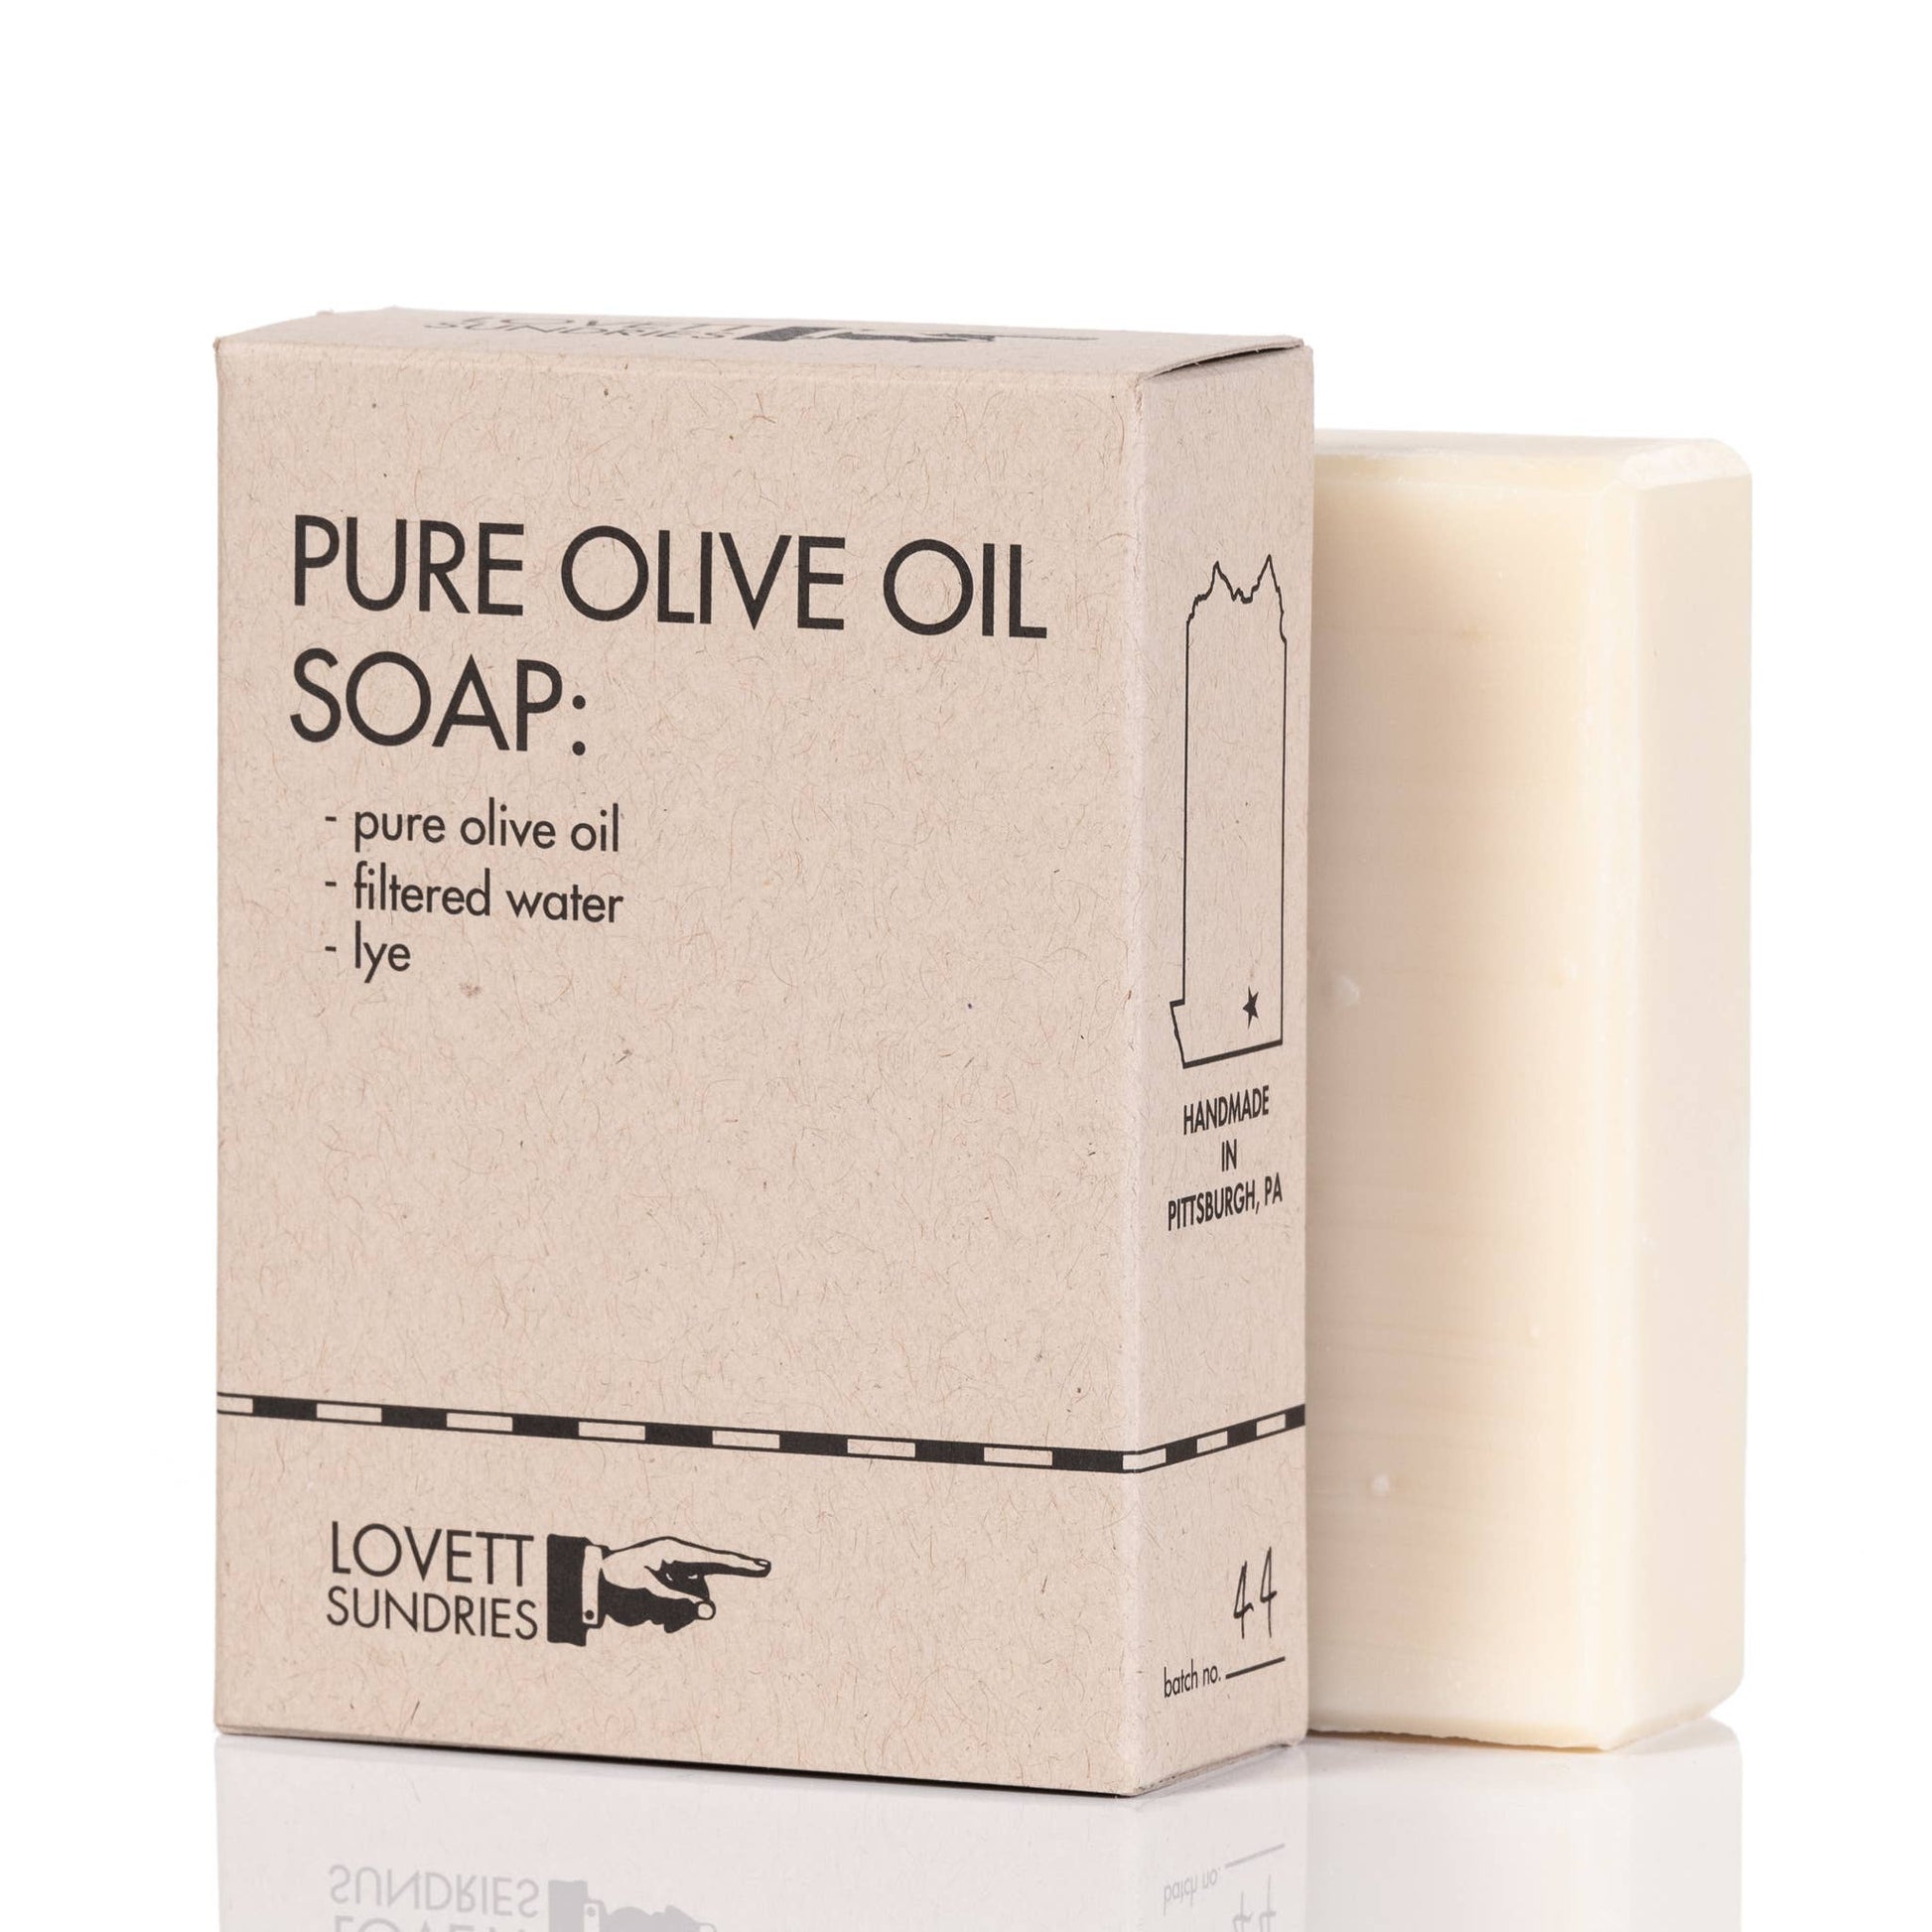 Lovett Sundries - Pure Olive Oil Soap Lovett Sundries